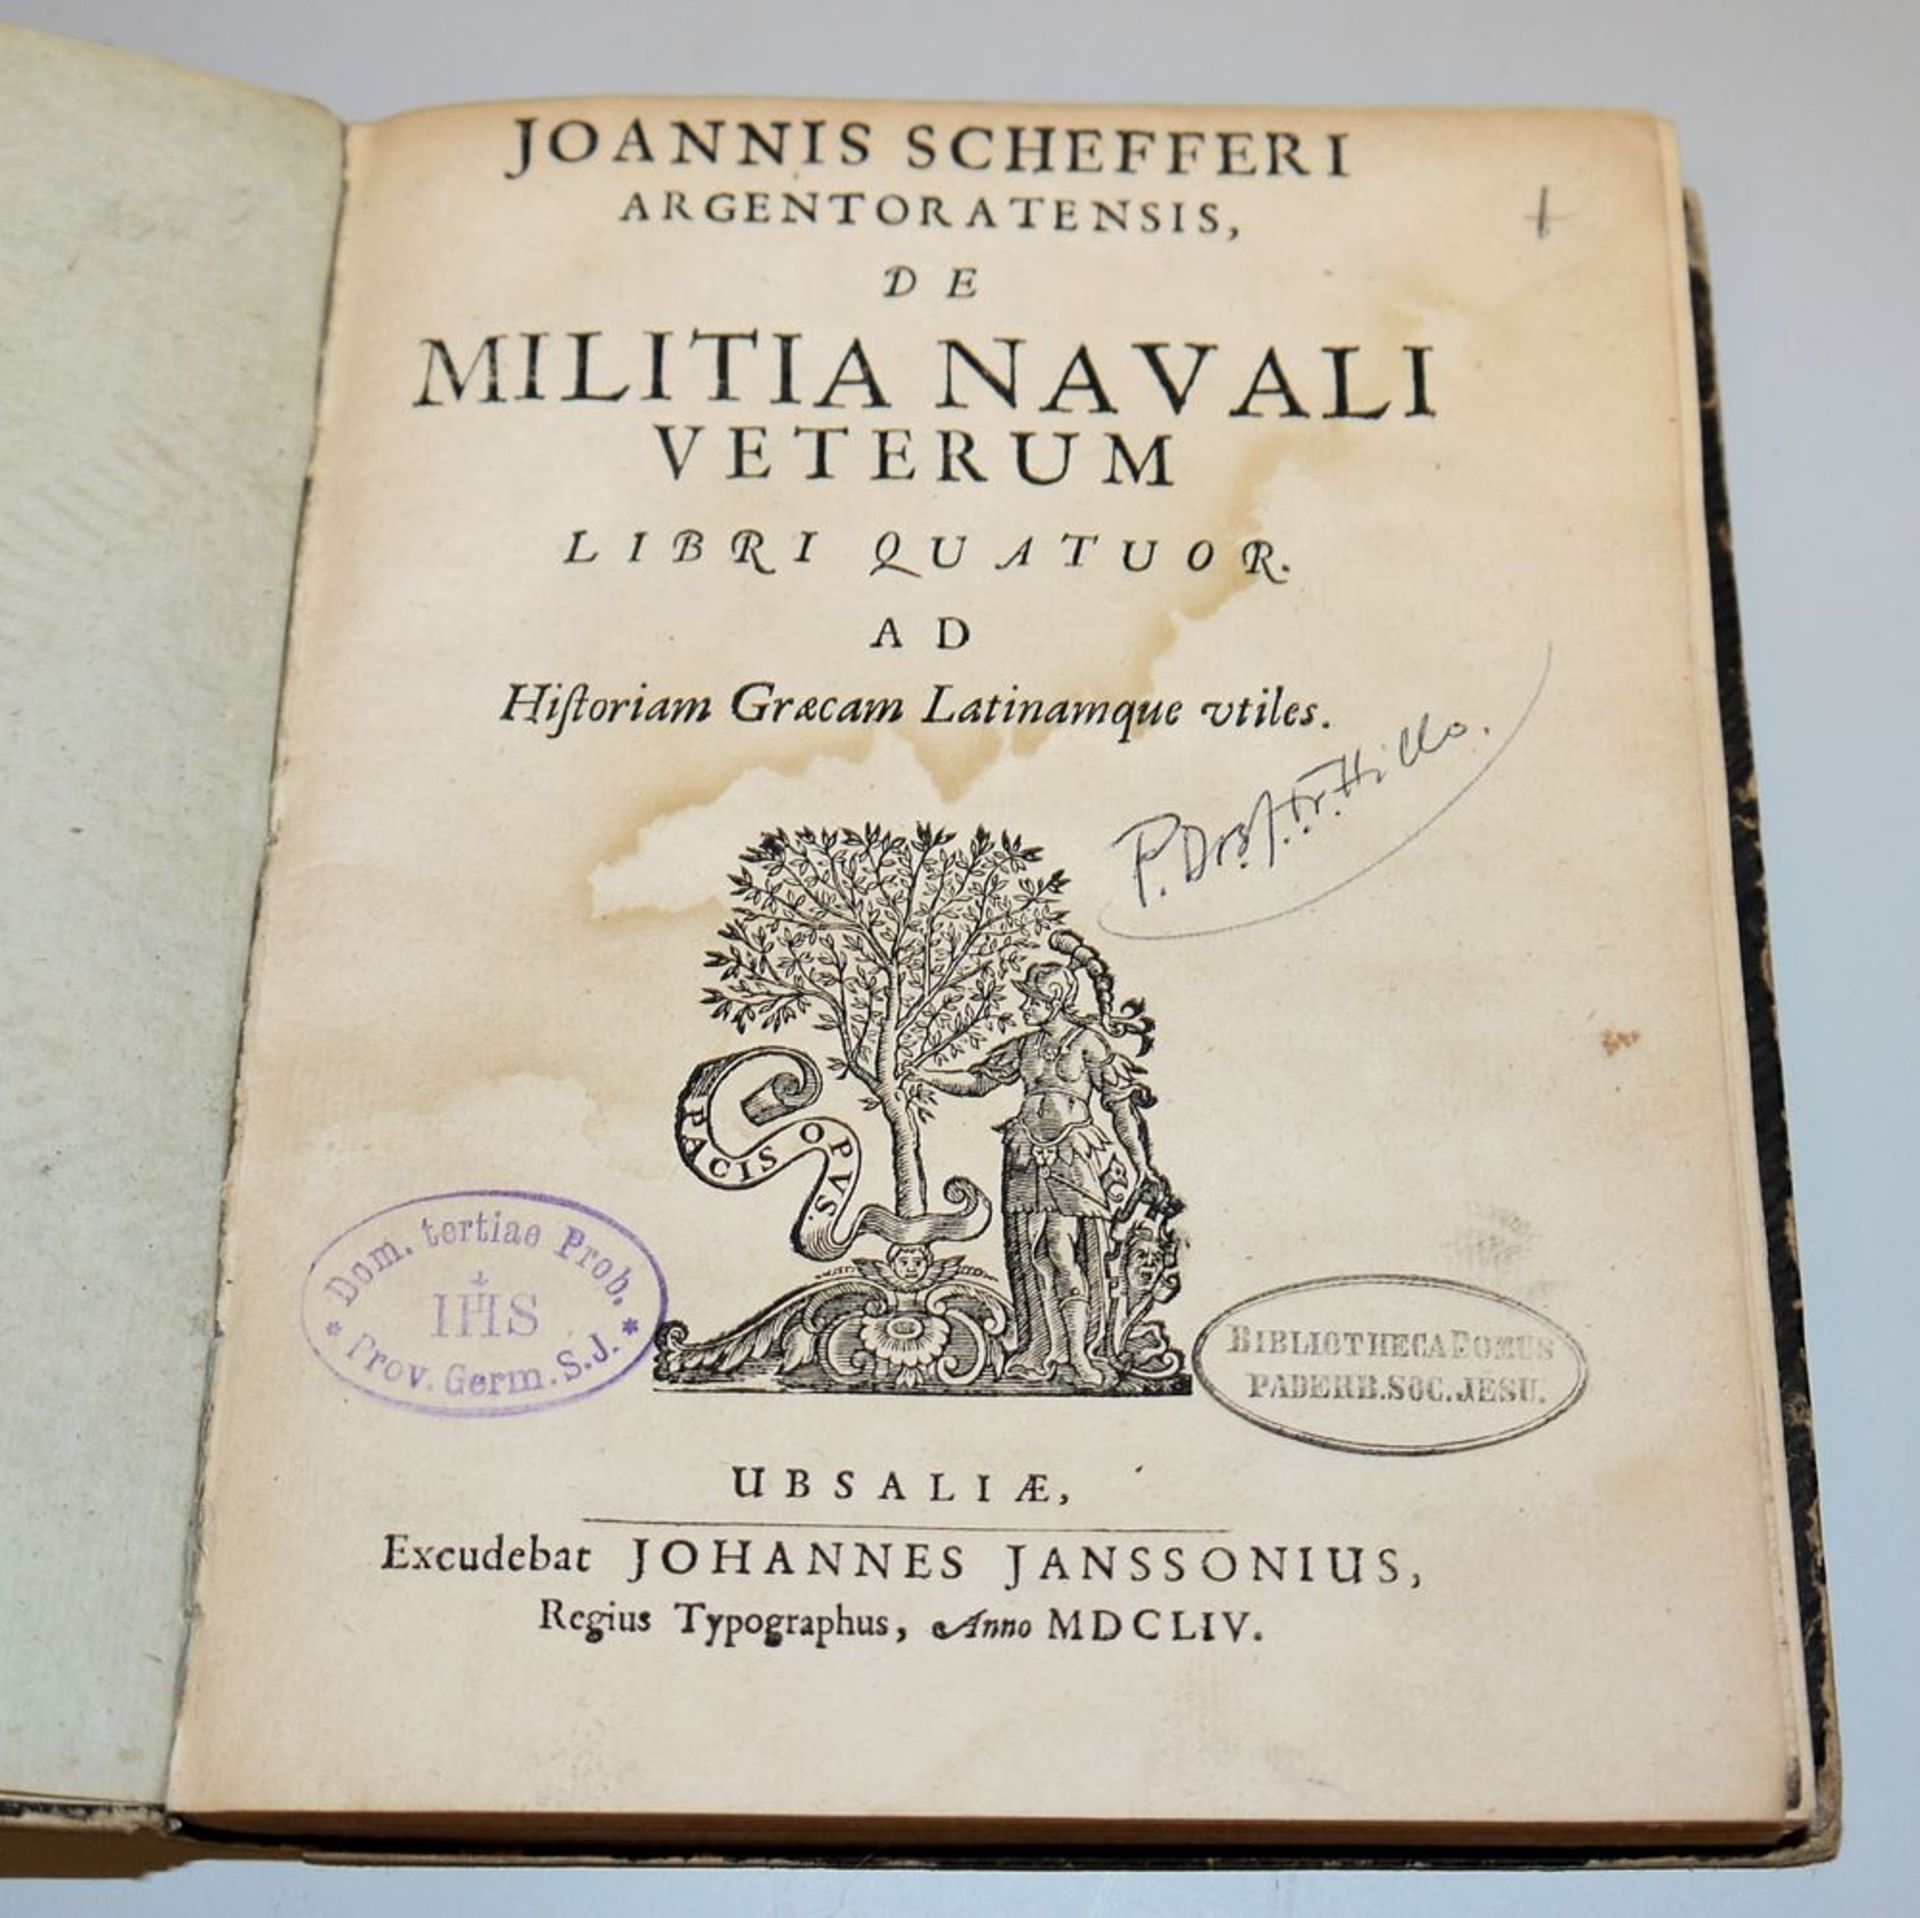 Militia navali veterum (Marinegeschichte der alten Griechen und Römer), Erstausgabe von 1654 mit Ho - Bild 3 aus 4